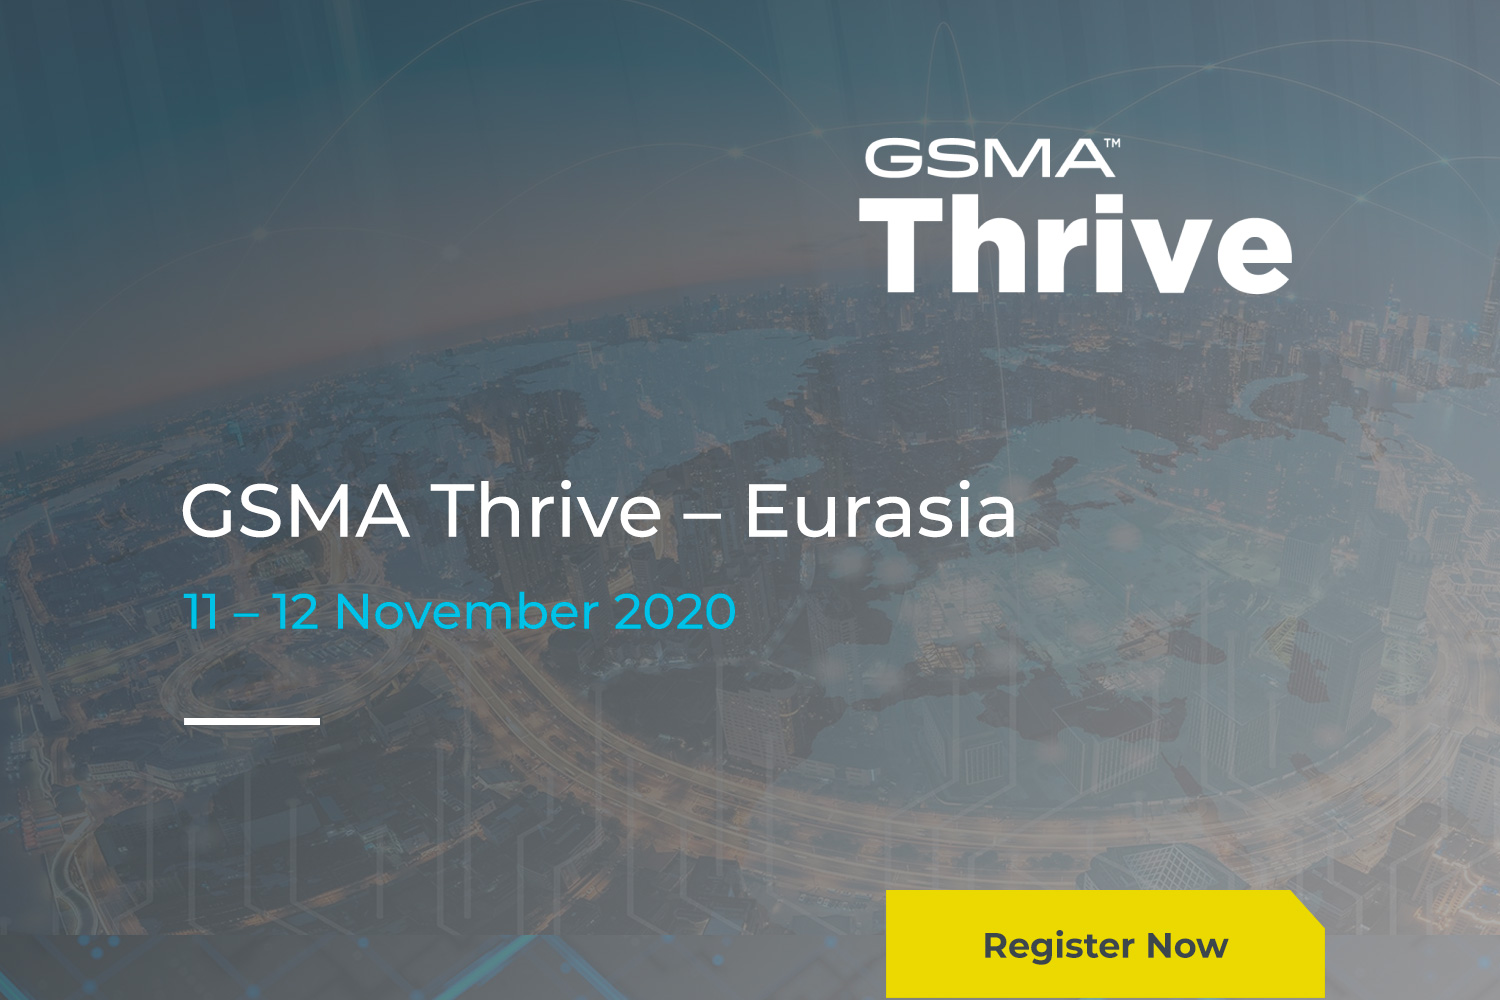 GSMA Thrive Eurasia